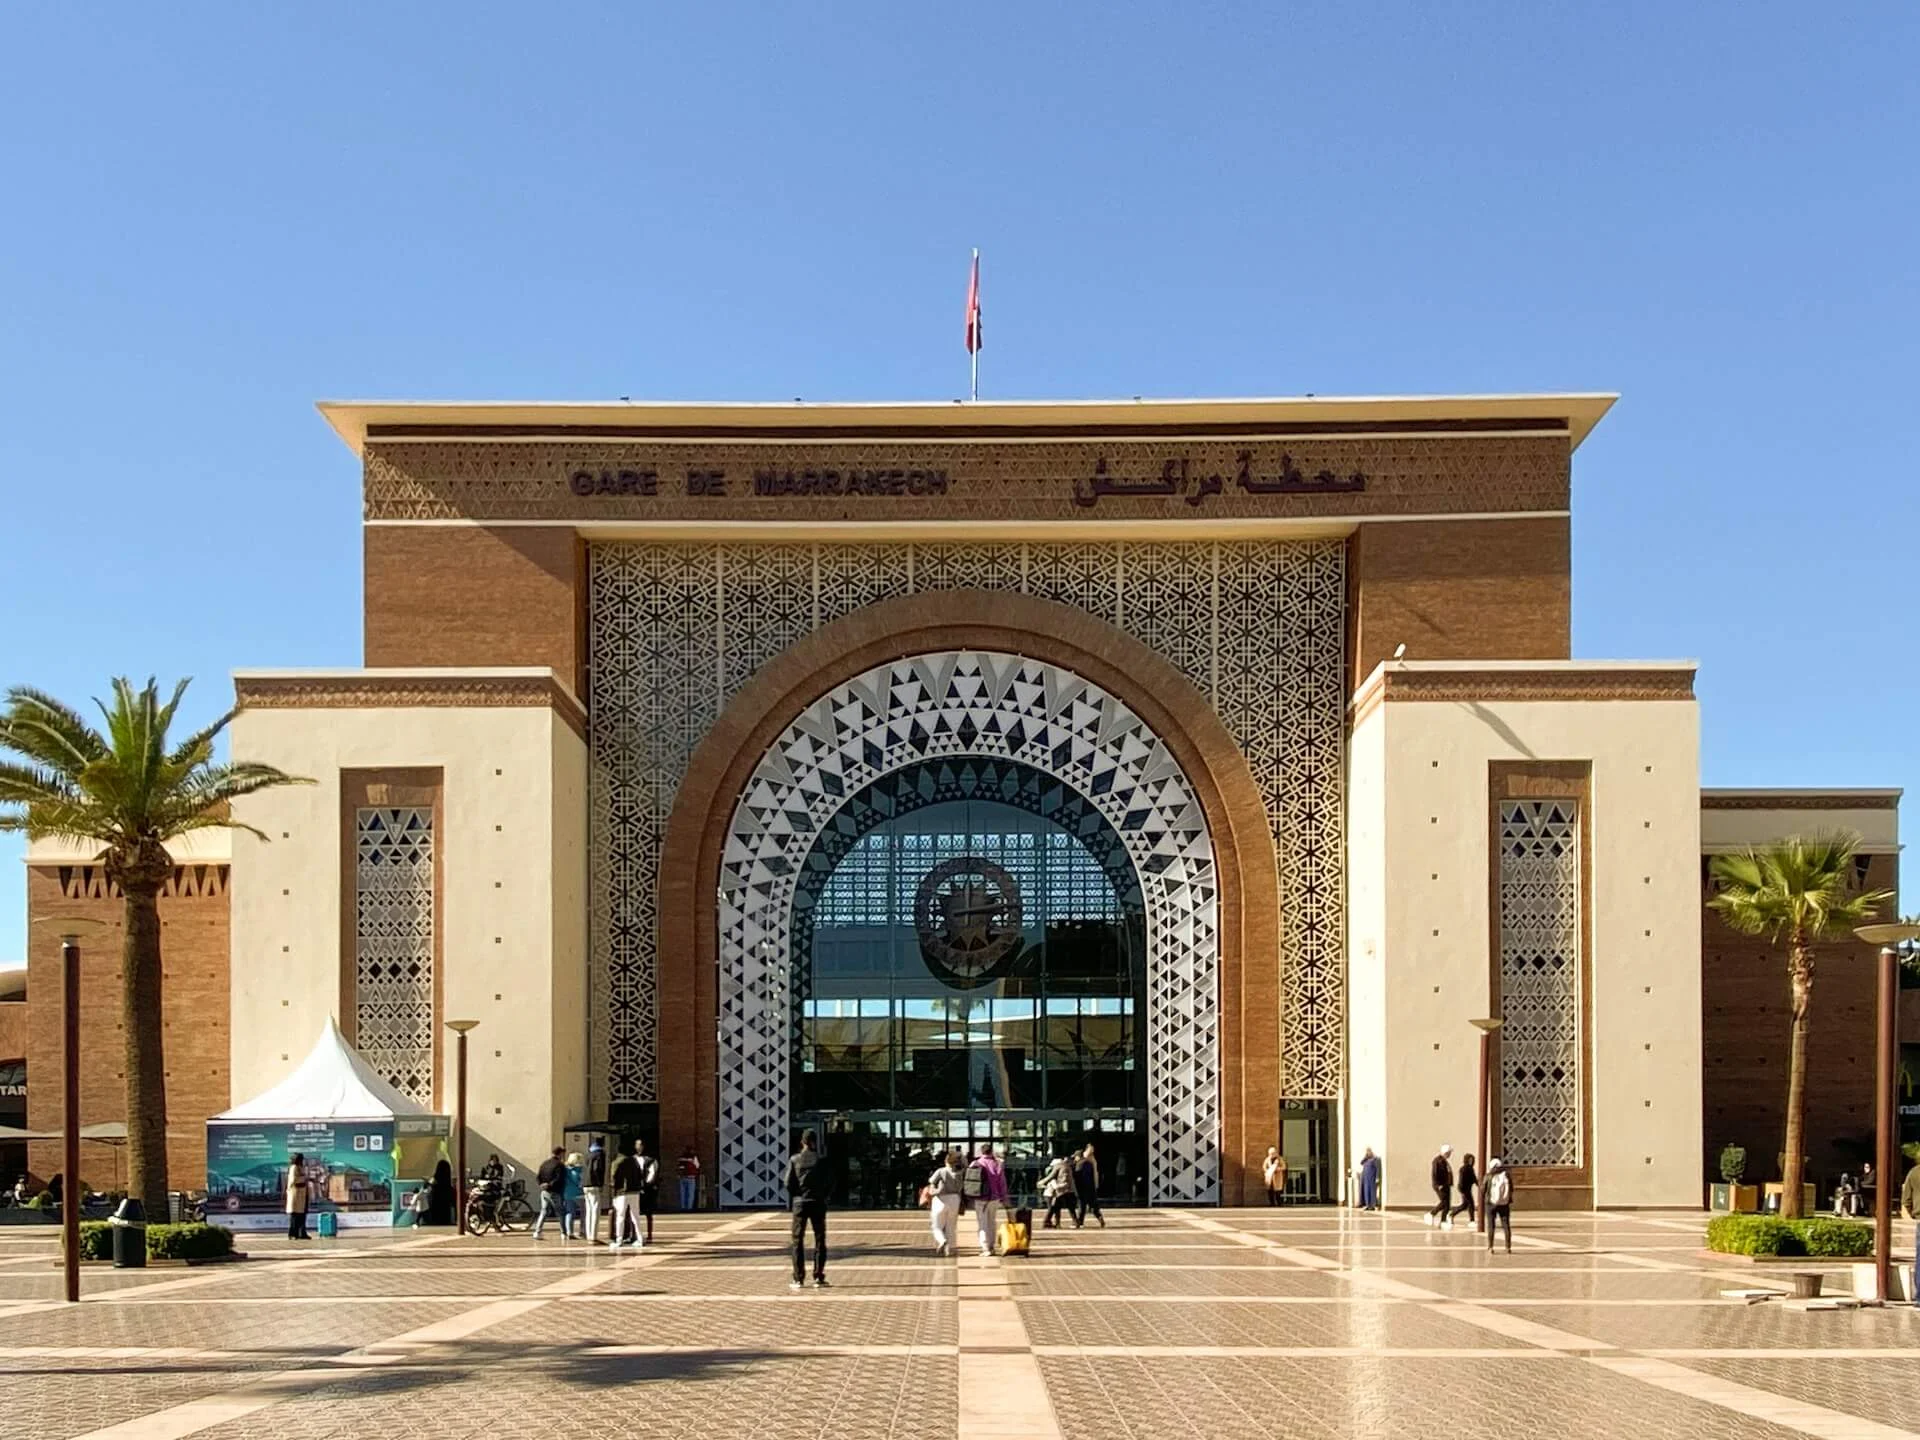 Train Gare de Marrakech